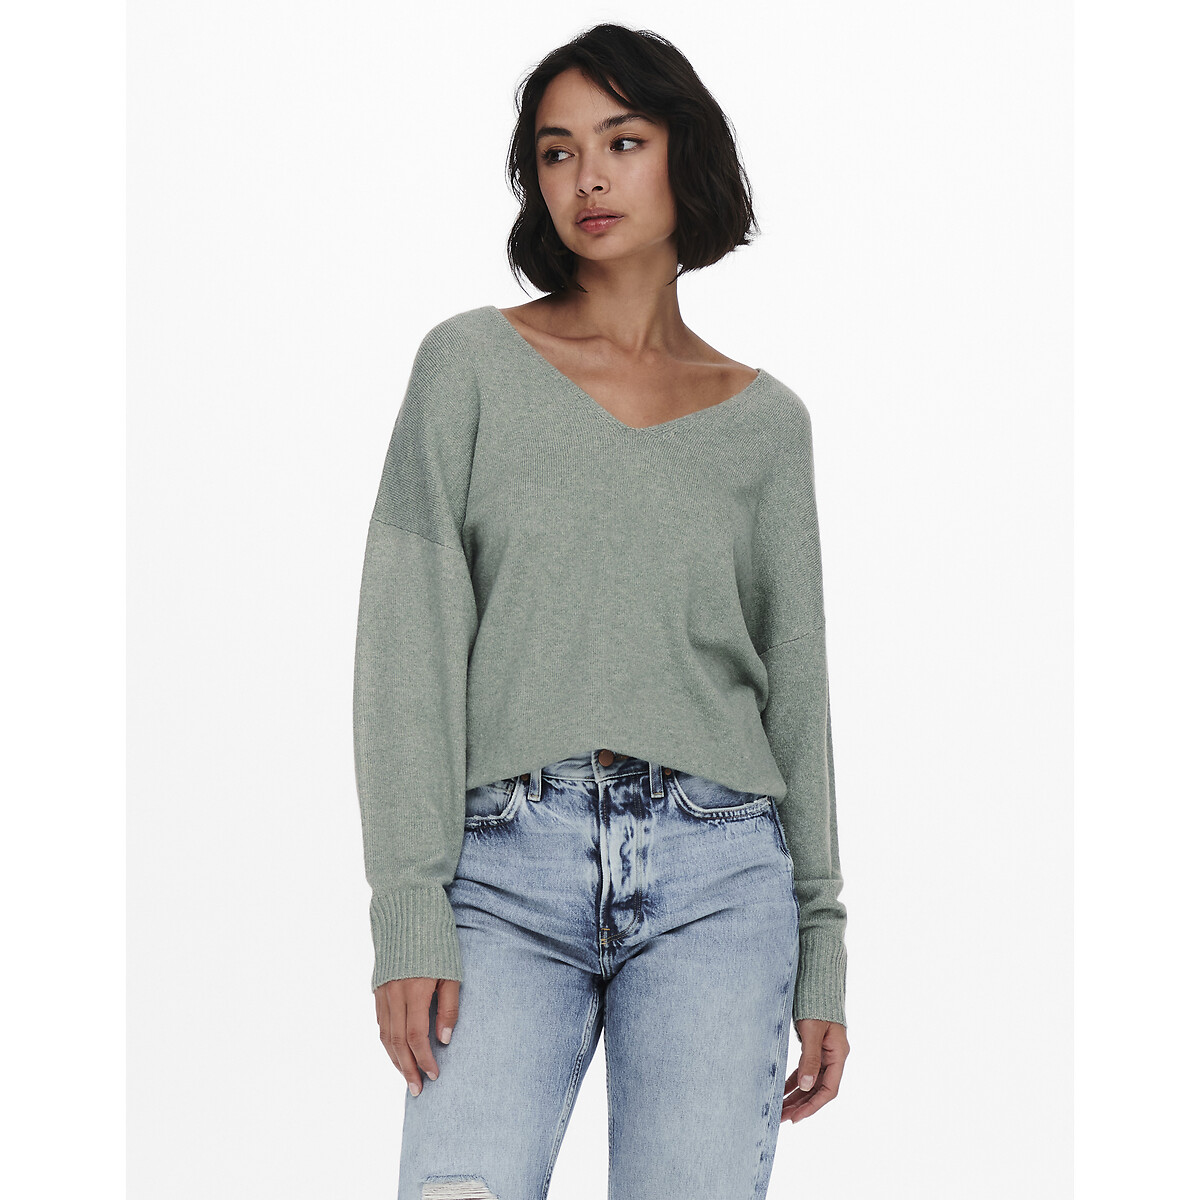 Пуловер ONLY Пуловер С V-образным вырезом из тонкого трикотажа S зеленый, размер S